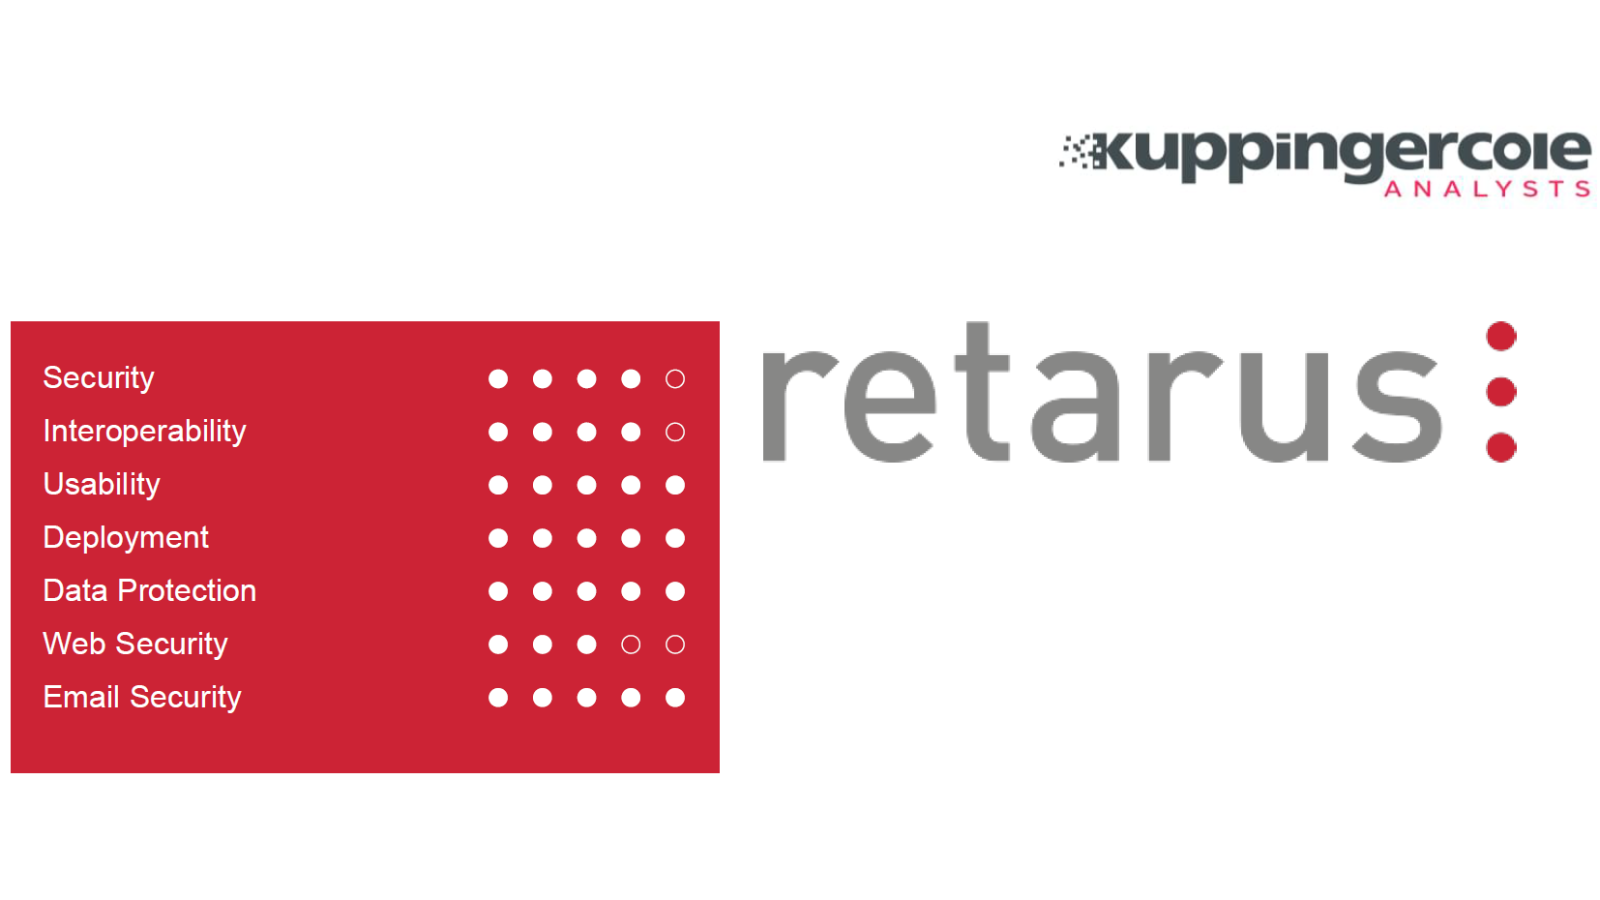 Retarus ได้รับคะแนนสูงสุด ด้านการรักษาความปลอดภัยในการส่งผ่านระบบคลาวด์ จาก KuppingerCole